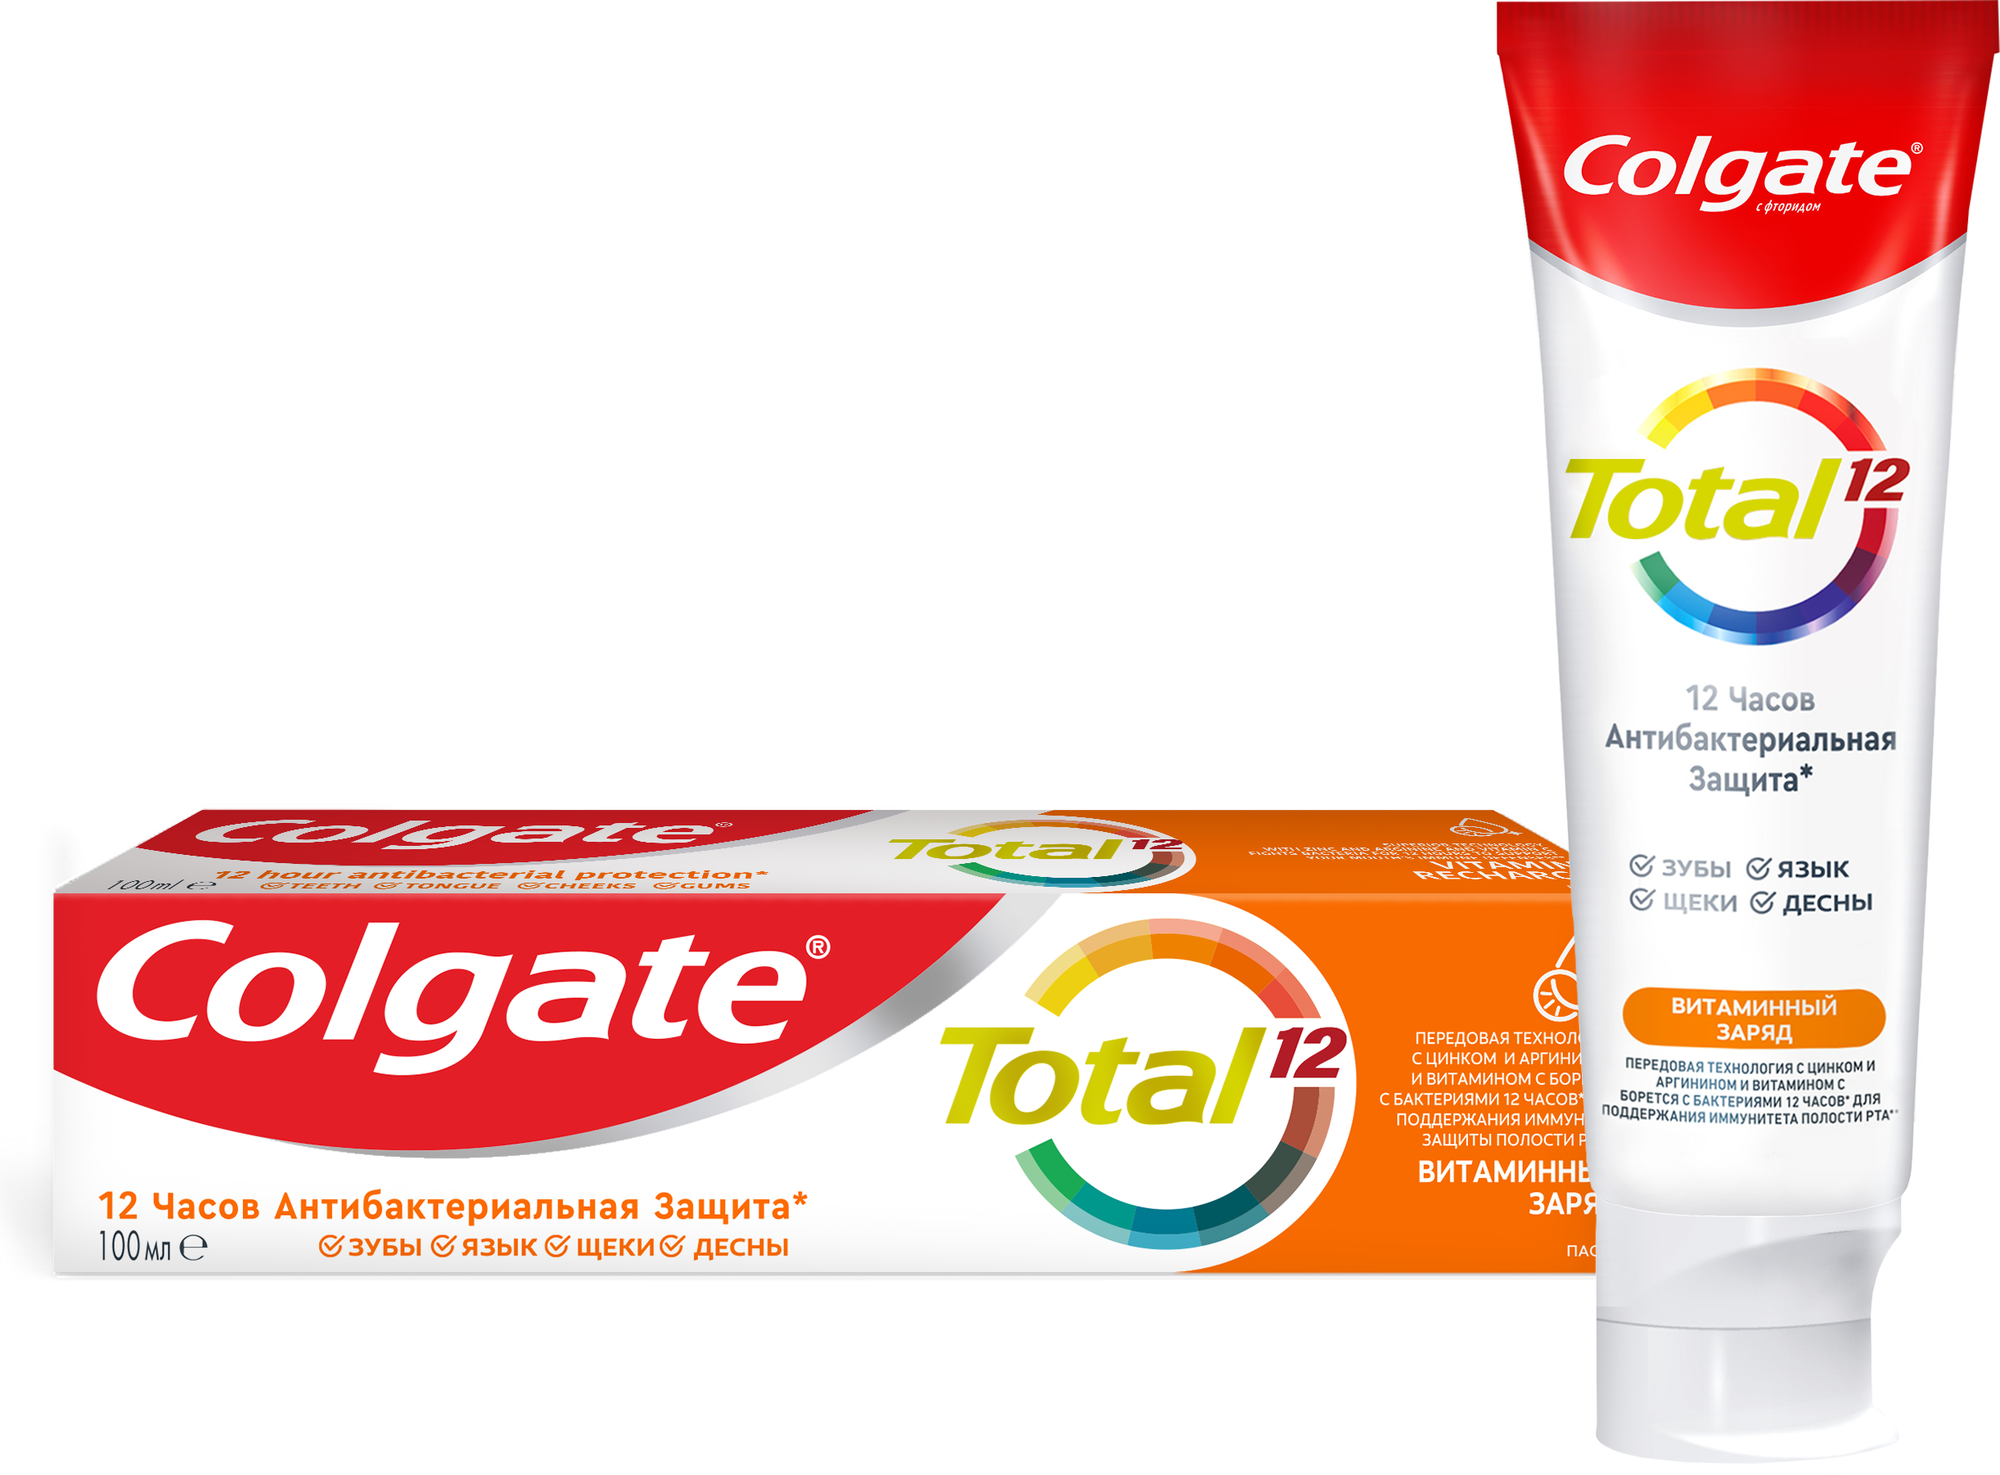 Зубная паста Colgate Total12 с витамин С 100 мл.